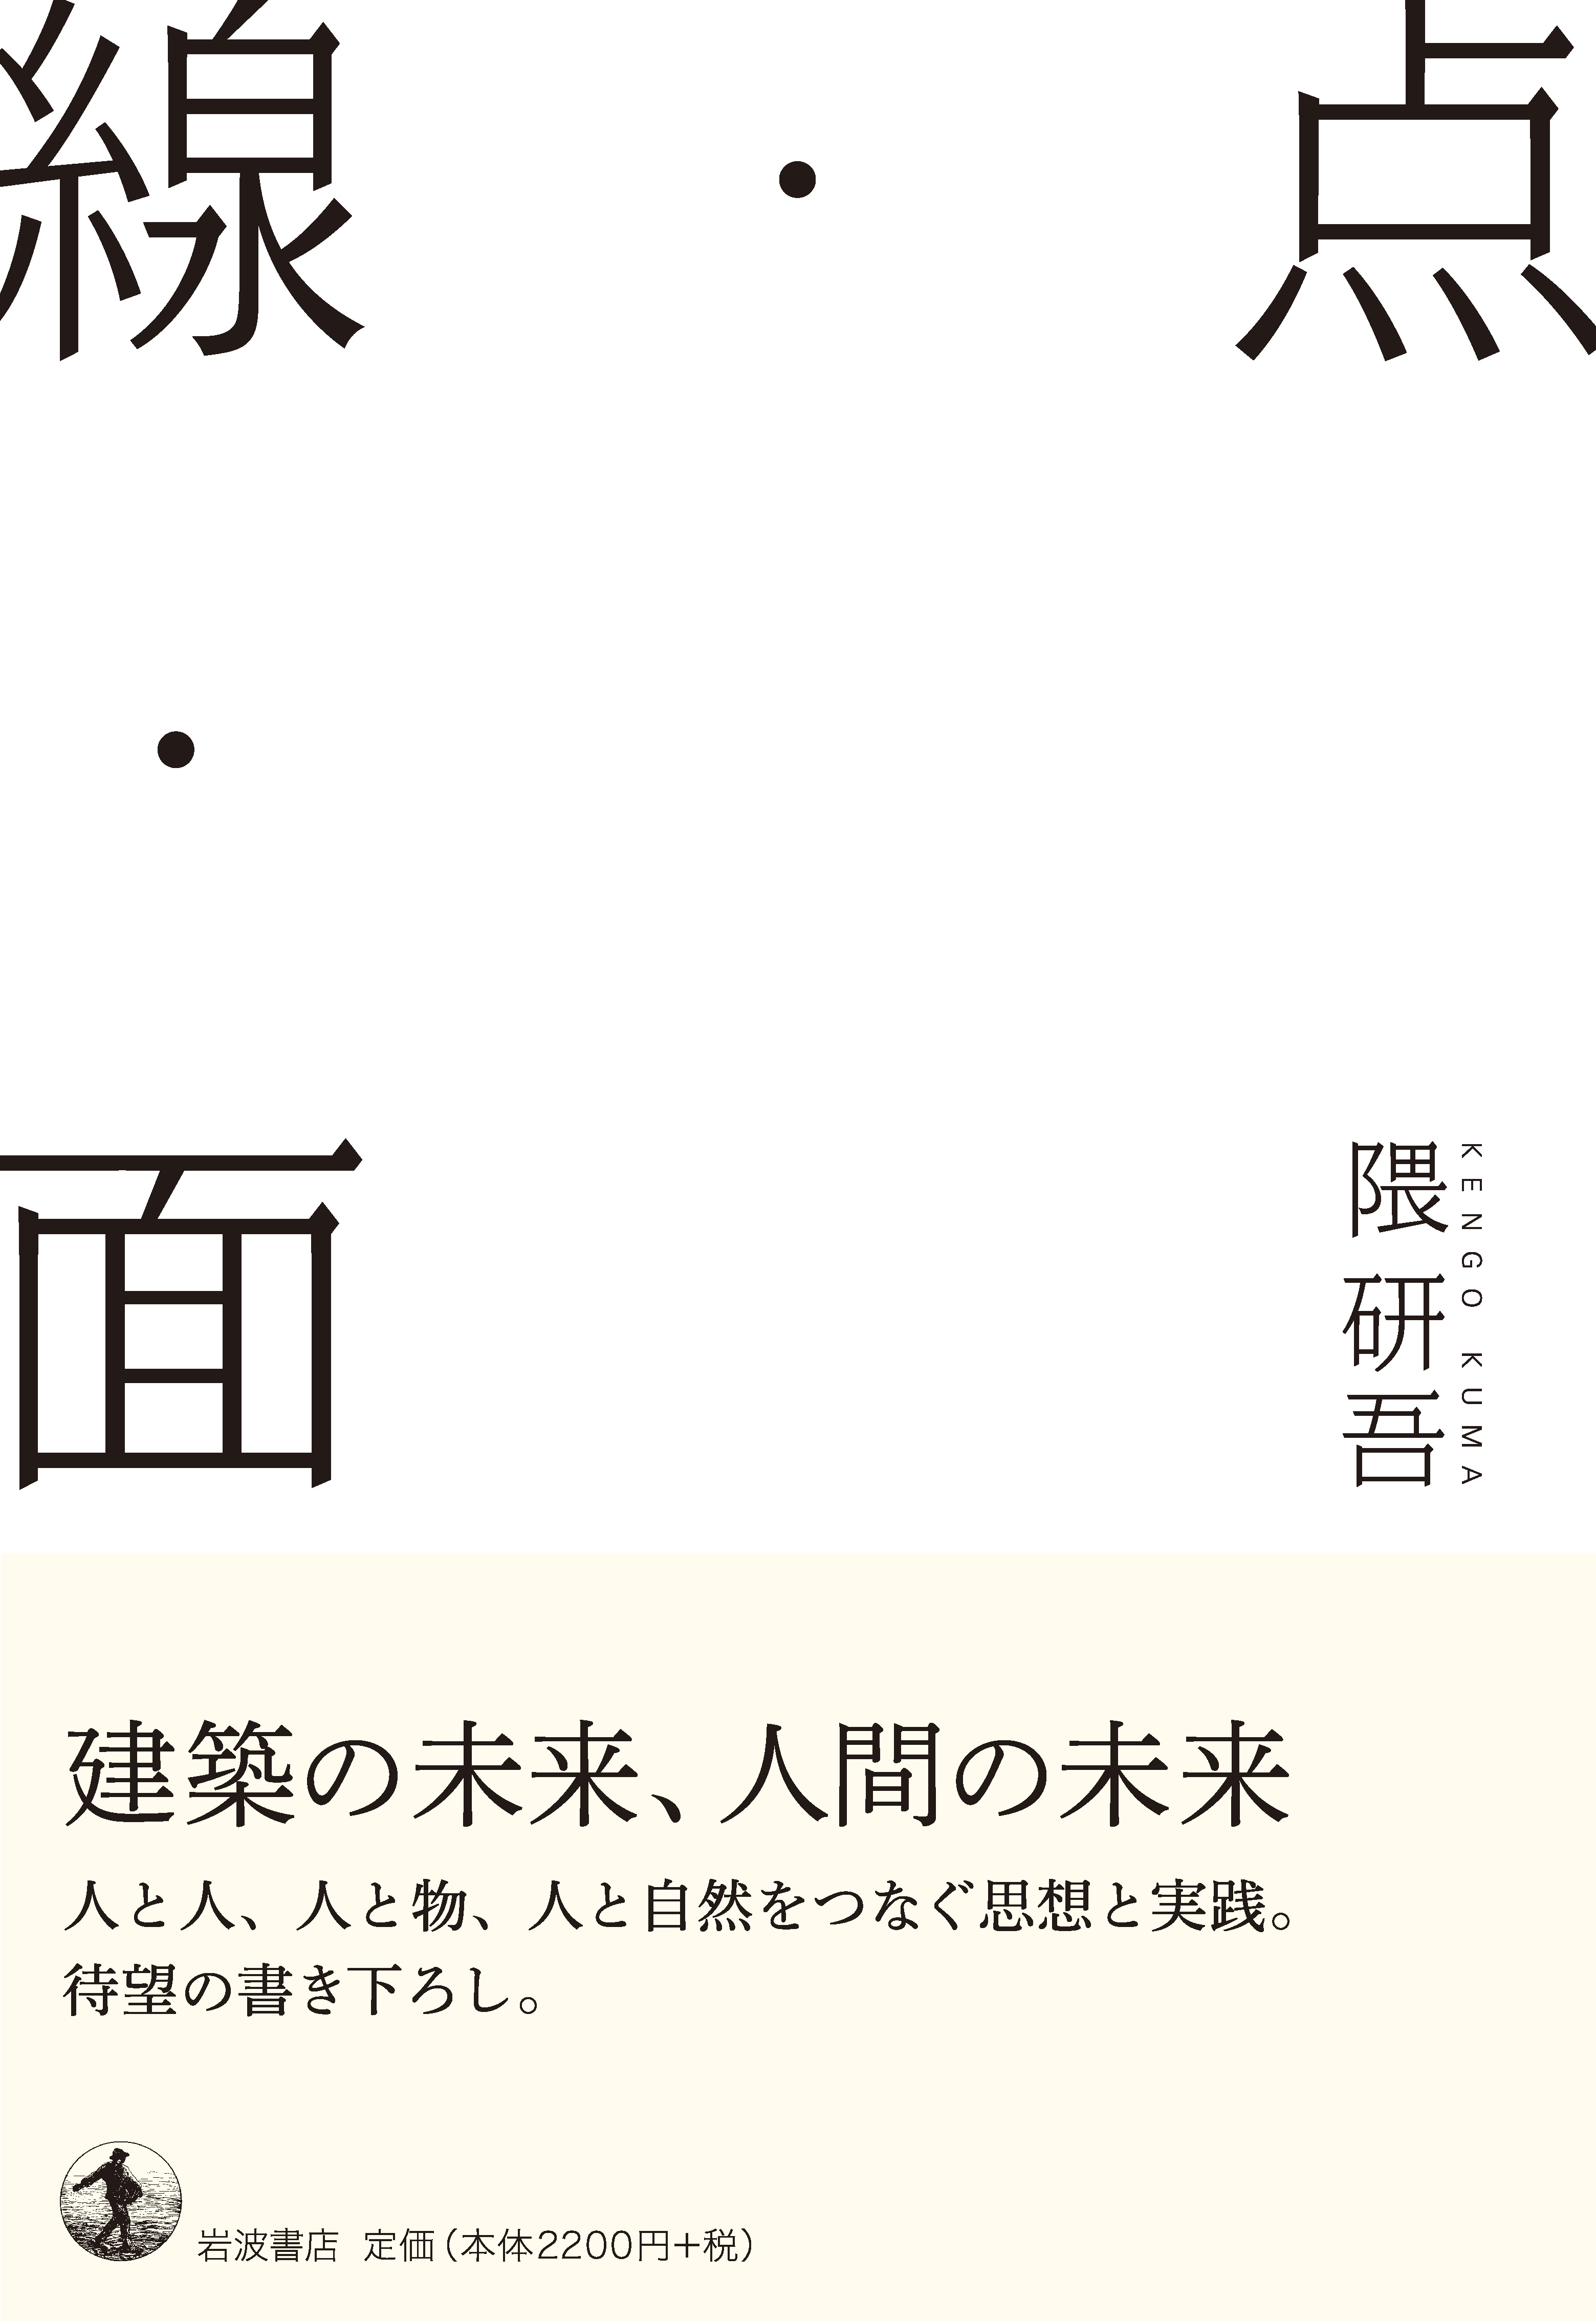 白い表紙、漢字で大きく点、線、面のタイポグラフィー